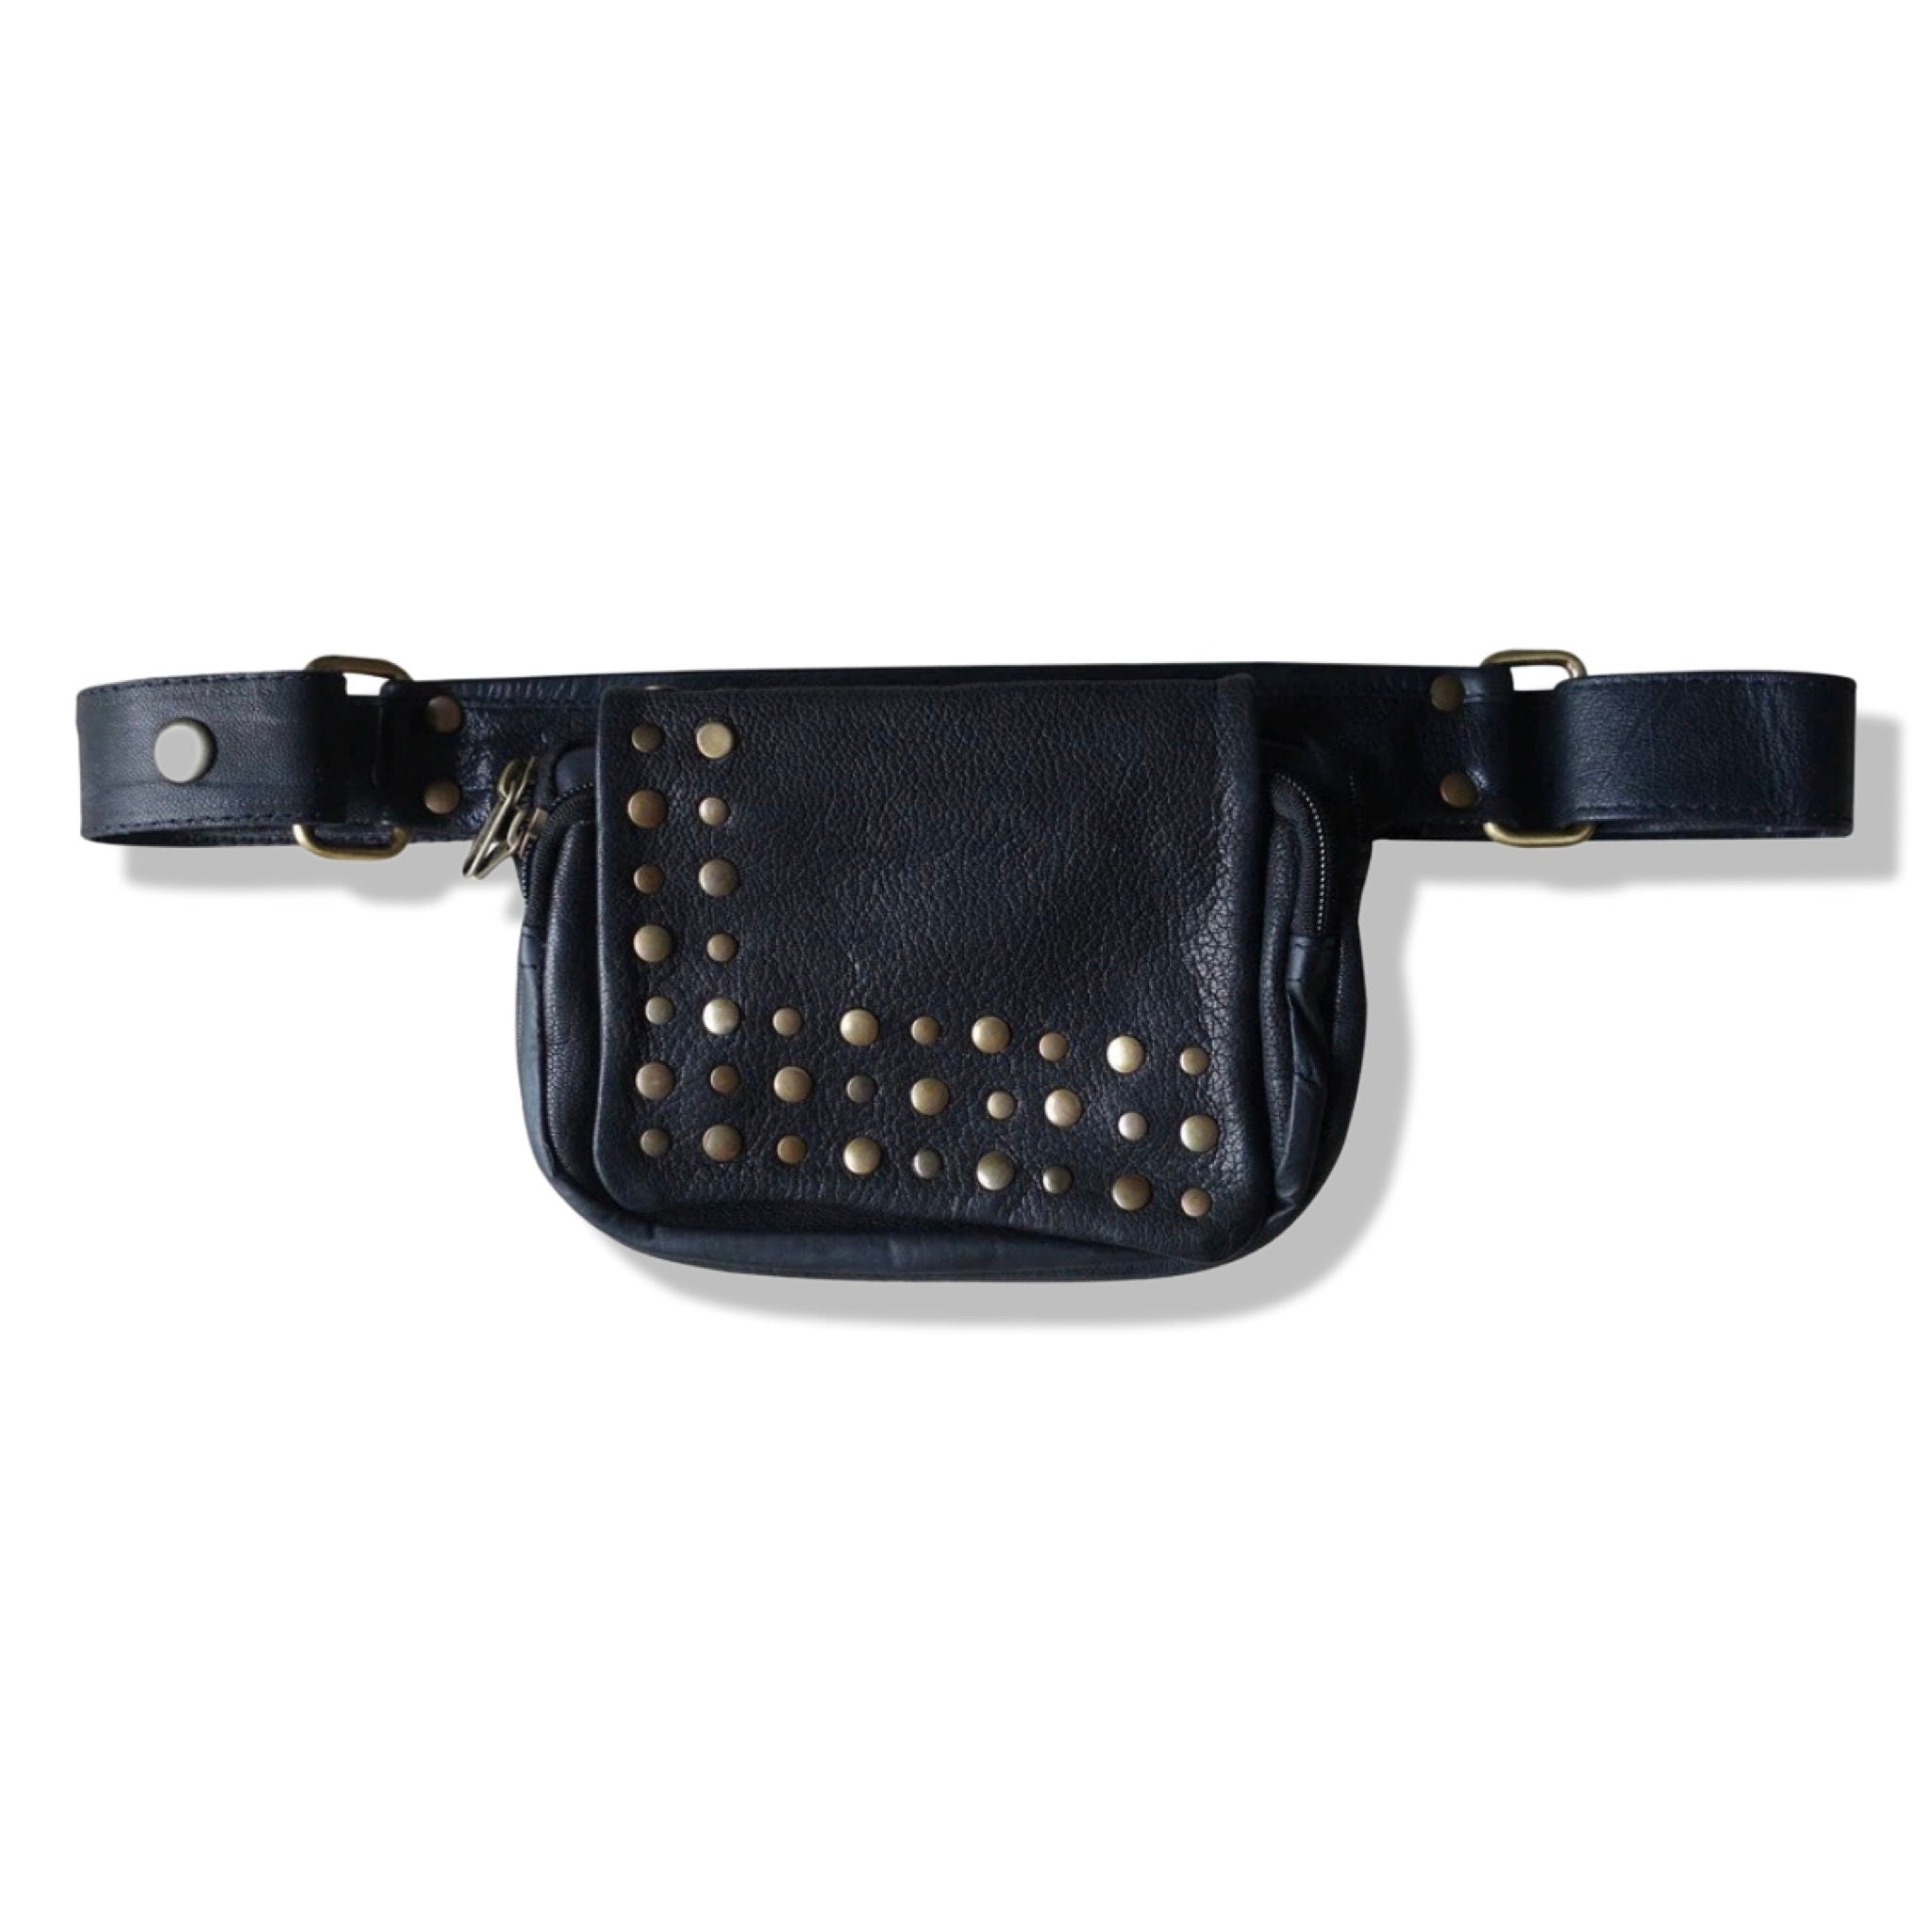 Genuine Leather Utility Pocket Belt | Studded | travel belt, fanny pack, vendor belt, festival belt, burning man, ren fair, dog walker bag